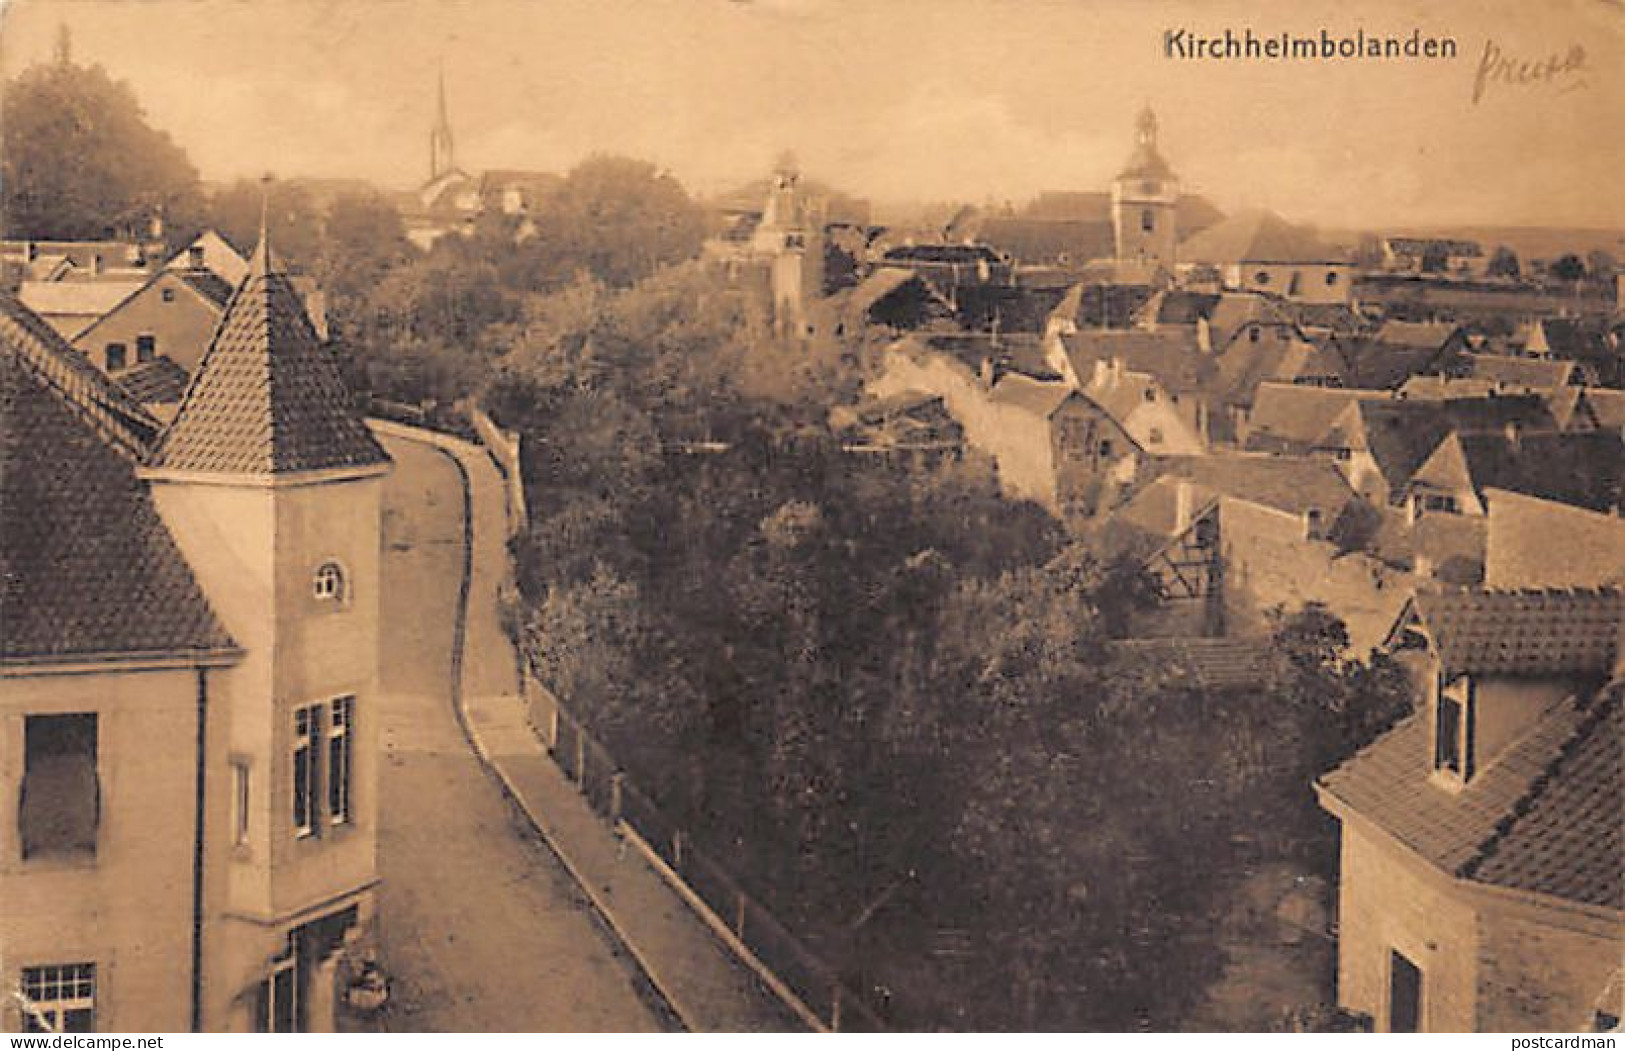 Kirchheimbolanden (RP) Totalansicht, Verlag W. Gotthold, Buchhdlg., Kirchheimbolanden - Kirchheimbolanden